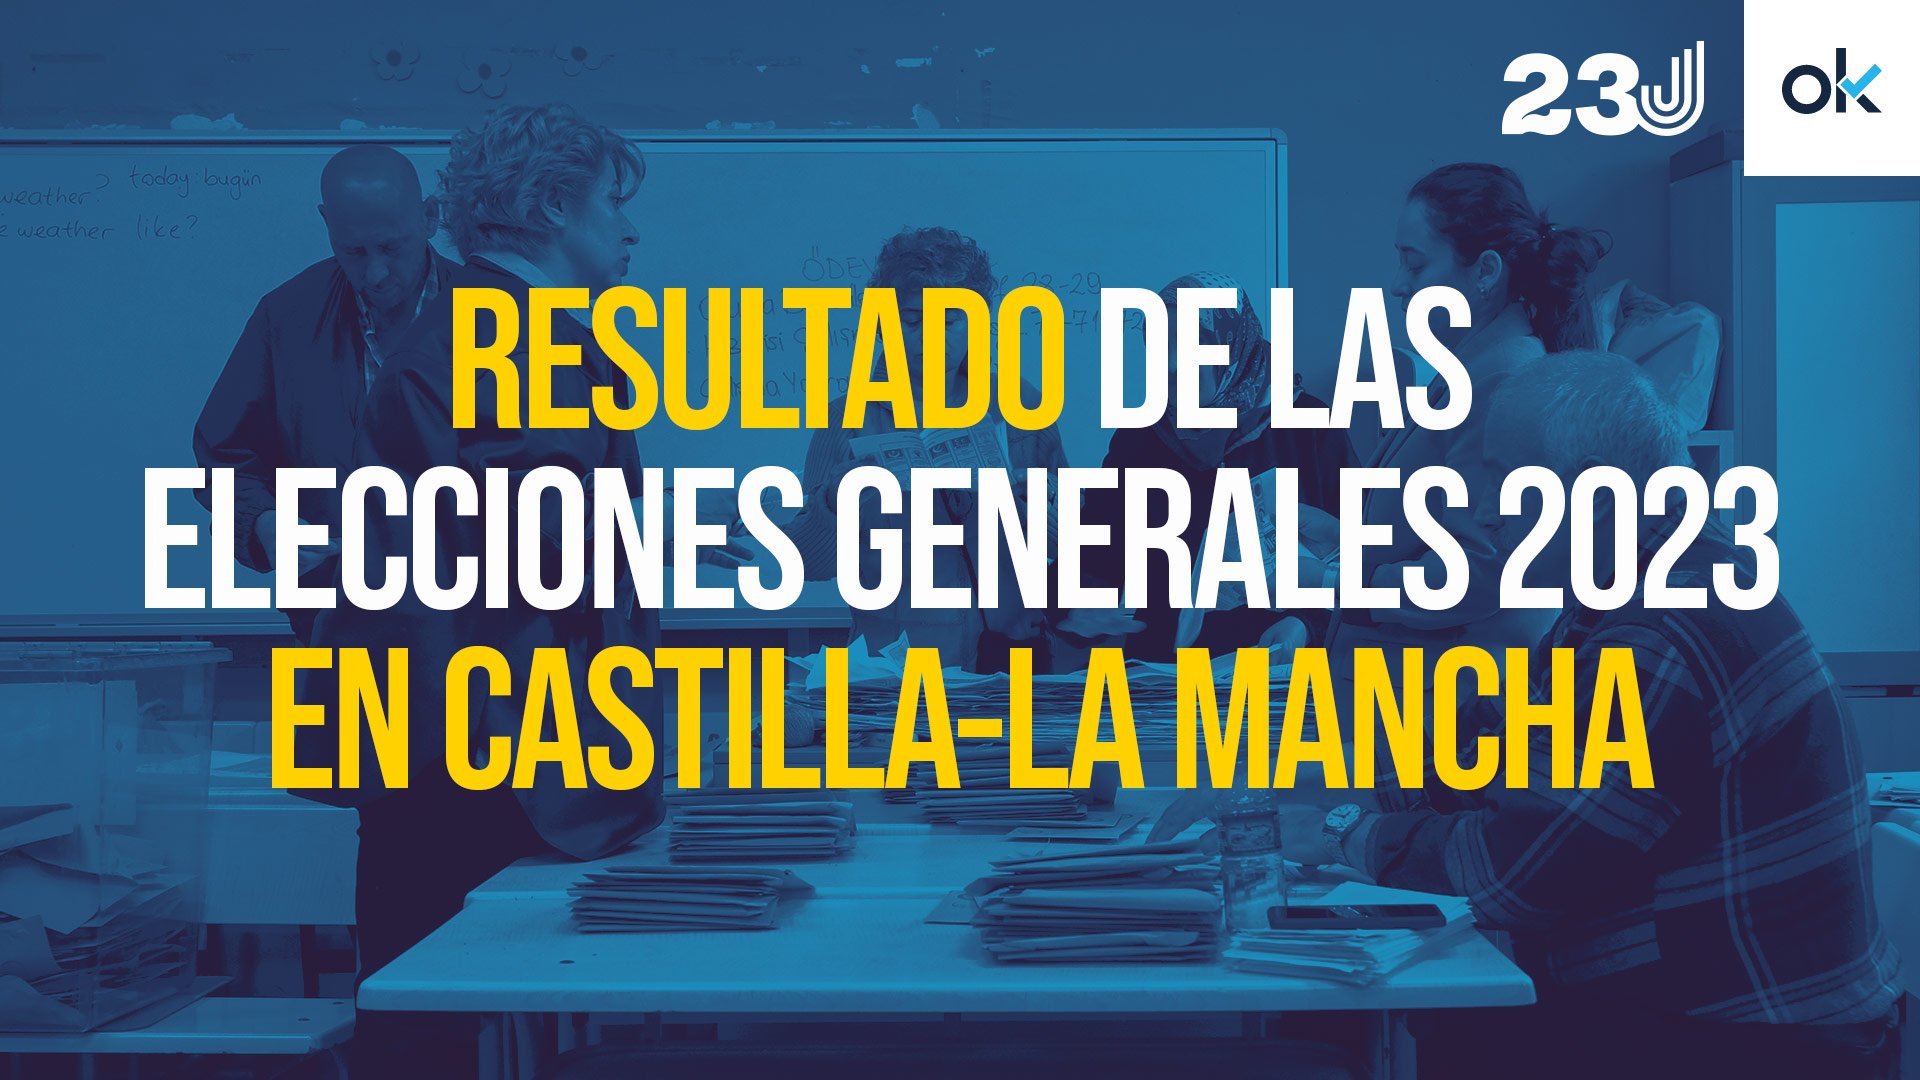 Resultado de las elecciones generales 2023 en CastillaLa Mancha